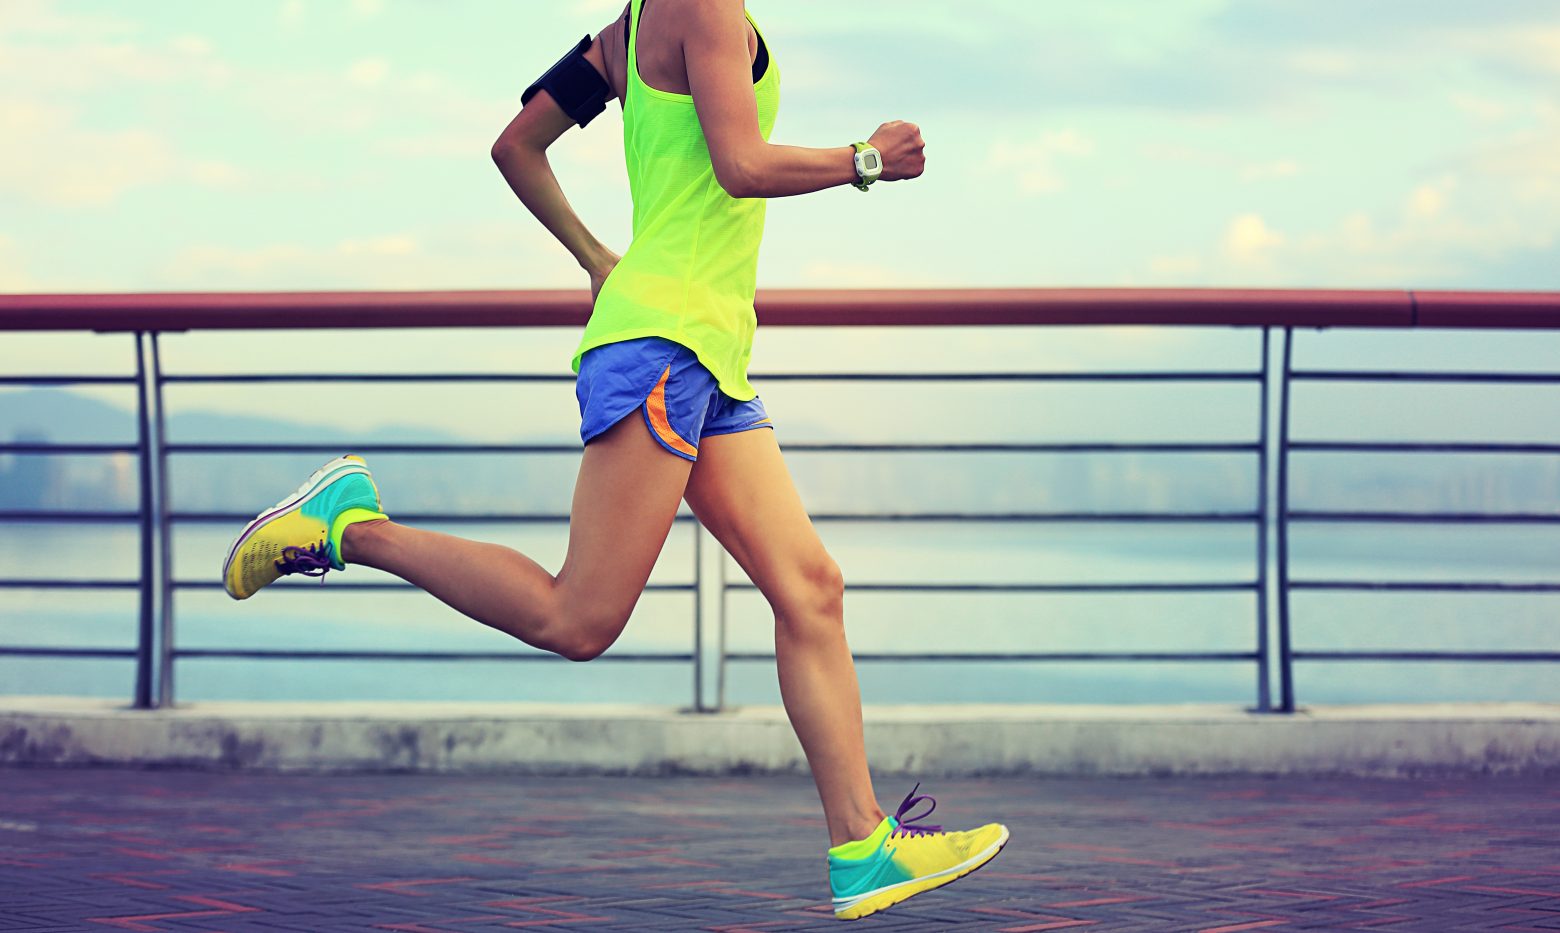 Άσκηση που… εξιτάρει: Η απόλαυση που αντλούμε από το τρέξιμο μοιάζει πολύ με τον οργασμό, λέει νέα έρευνα